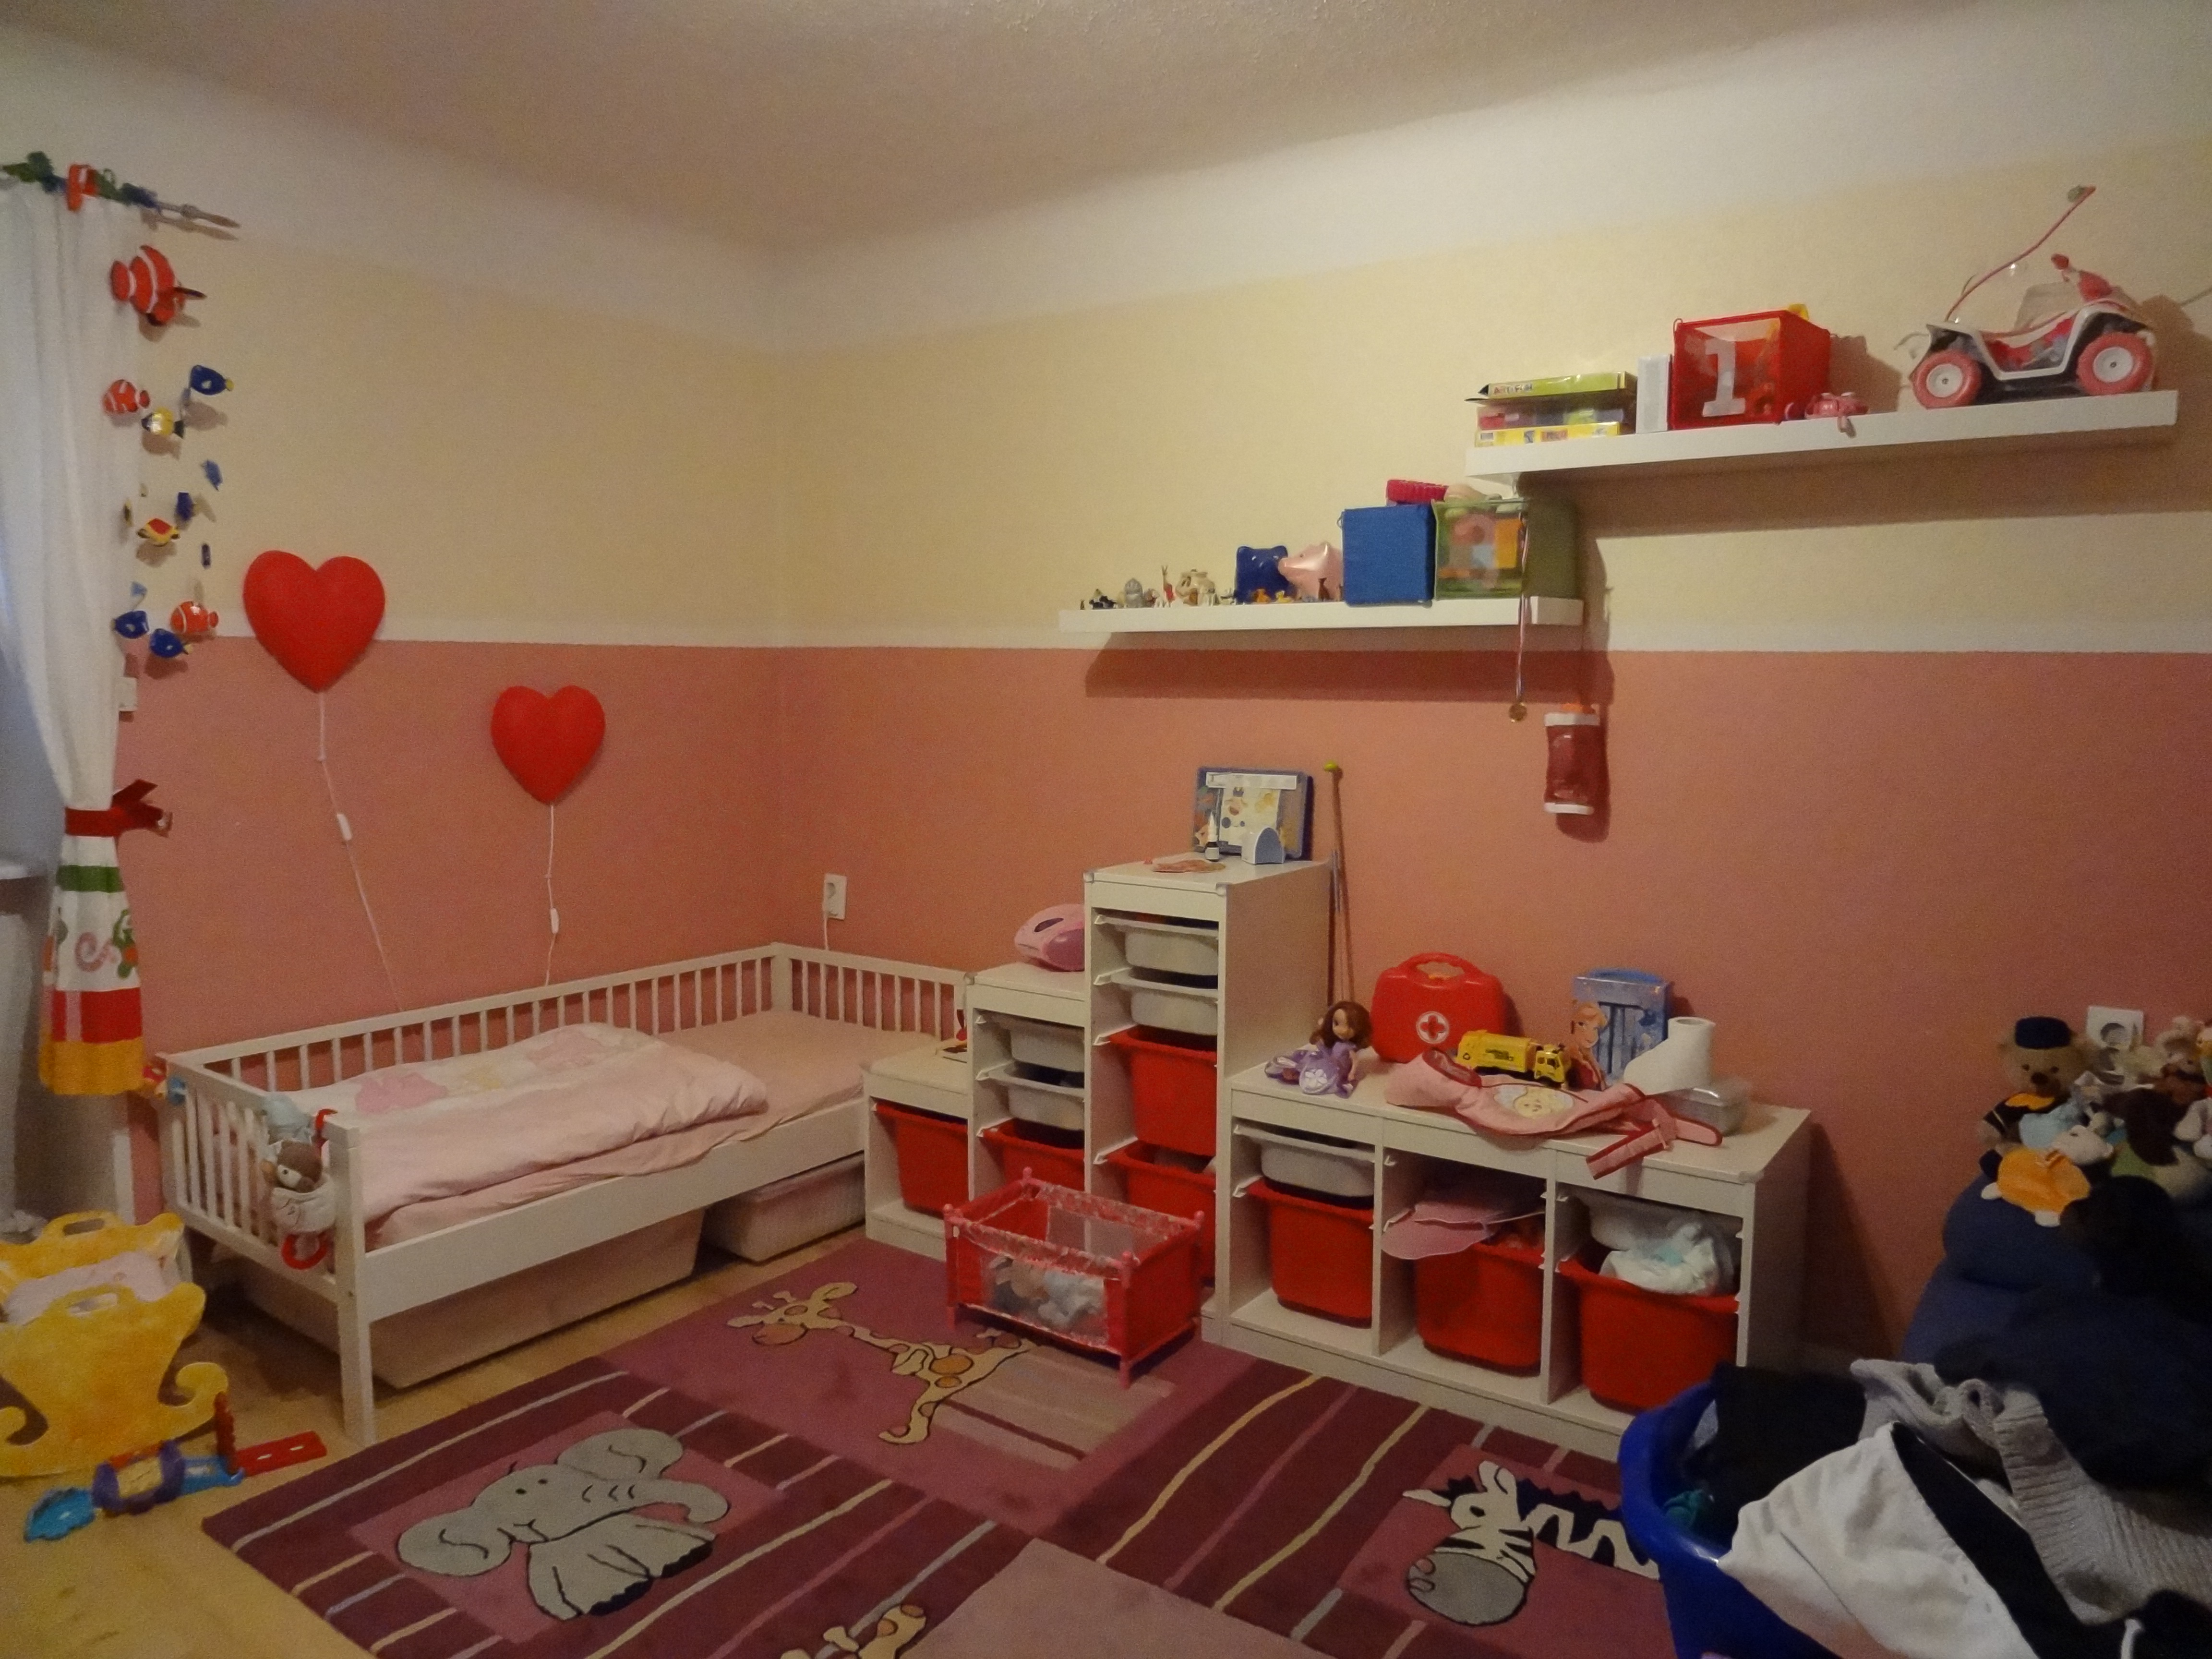 Kinderzimmer rechts vor Umgestaltung mit zu wenig Ordnungsmöglichkeiten